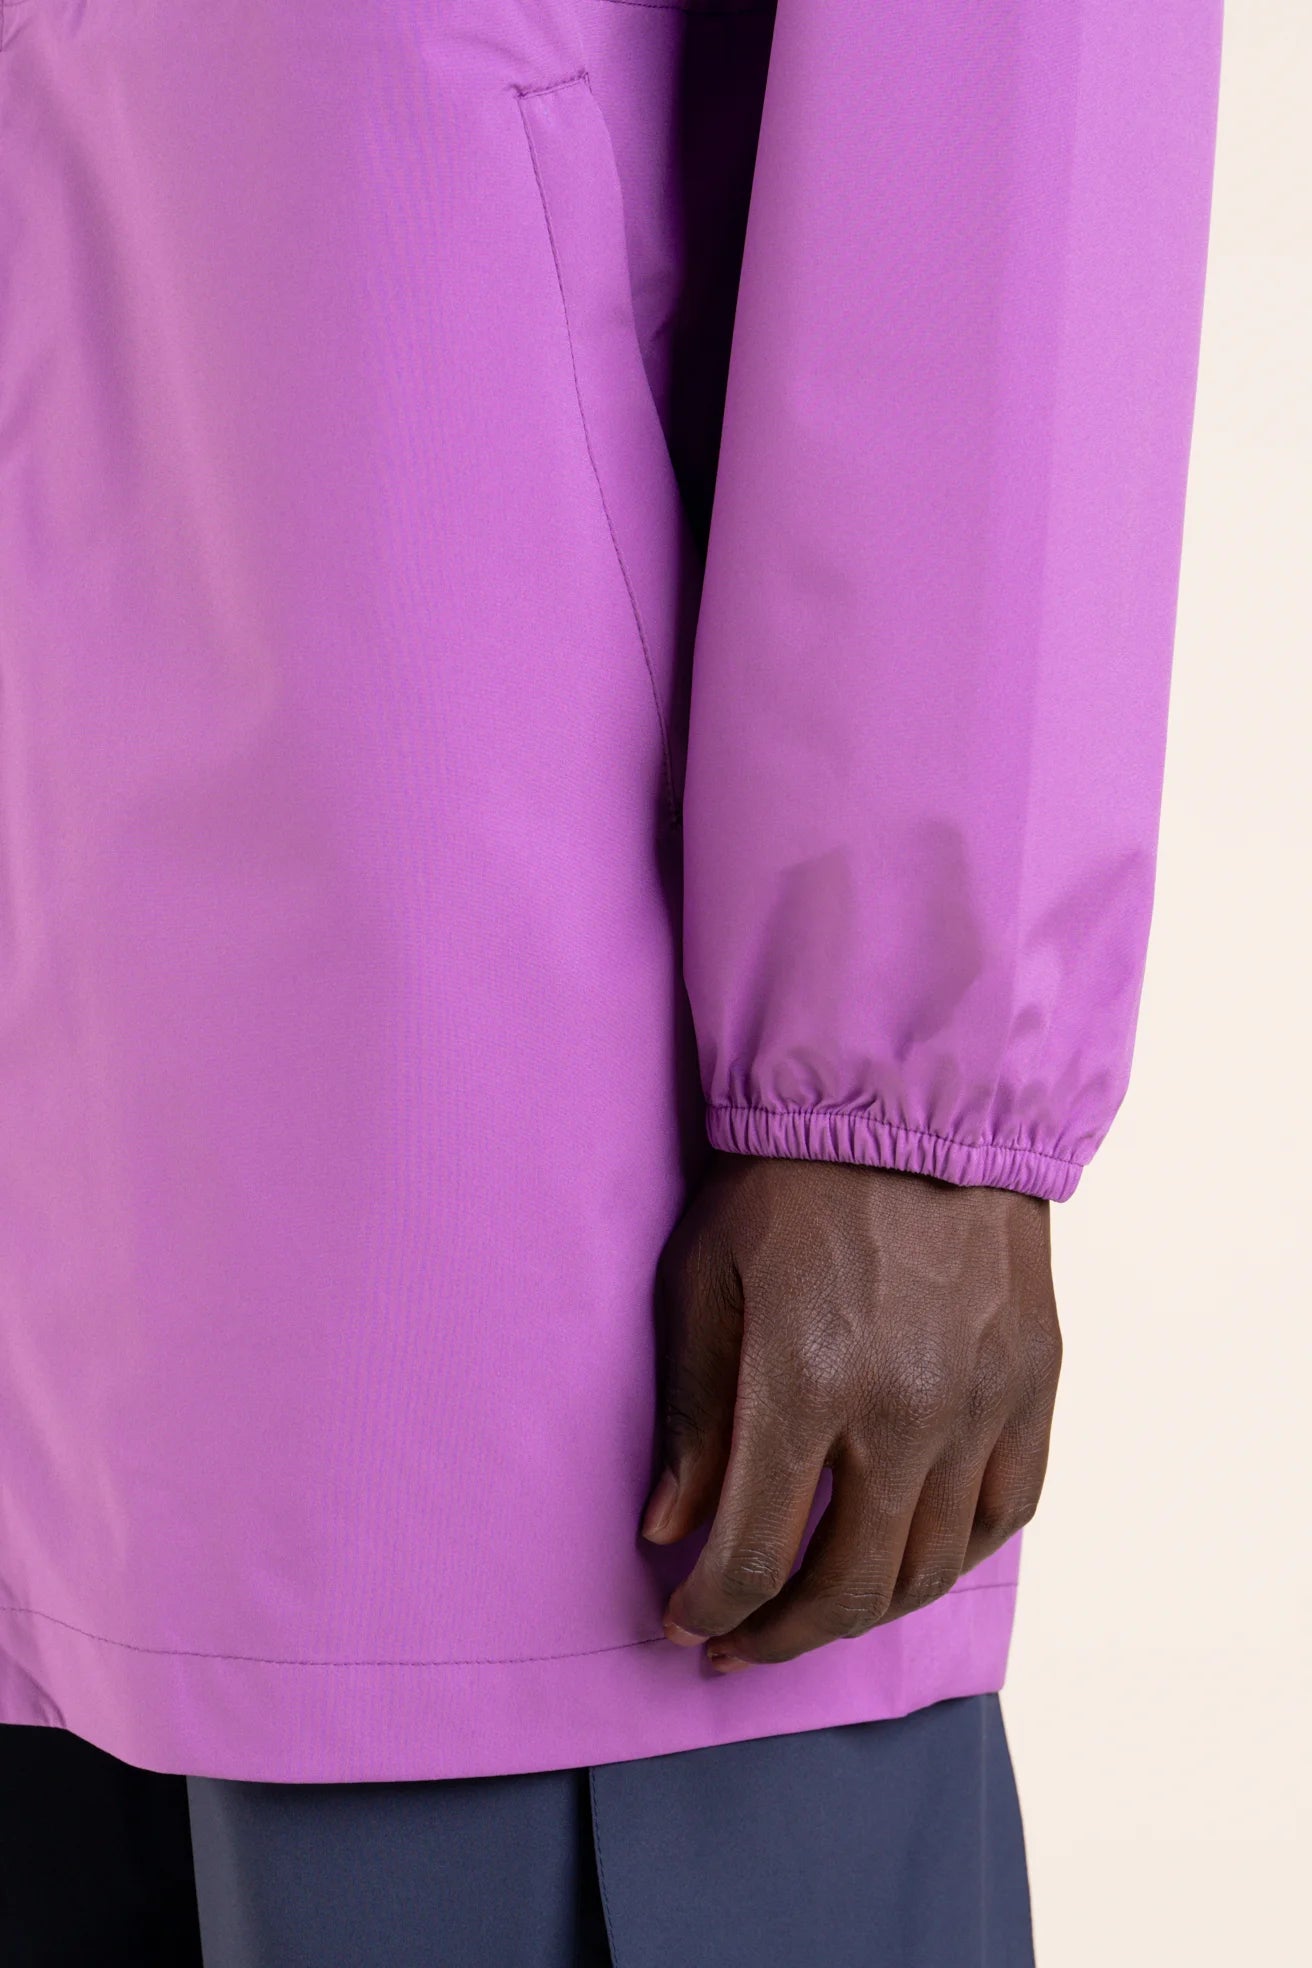 Amelot Couleur - Raincoat Long - Flotte #couleur_lavande